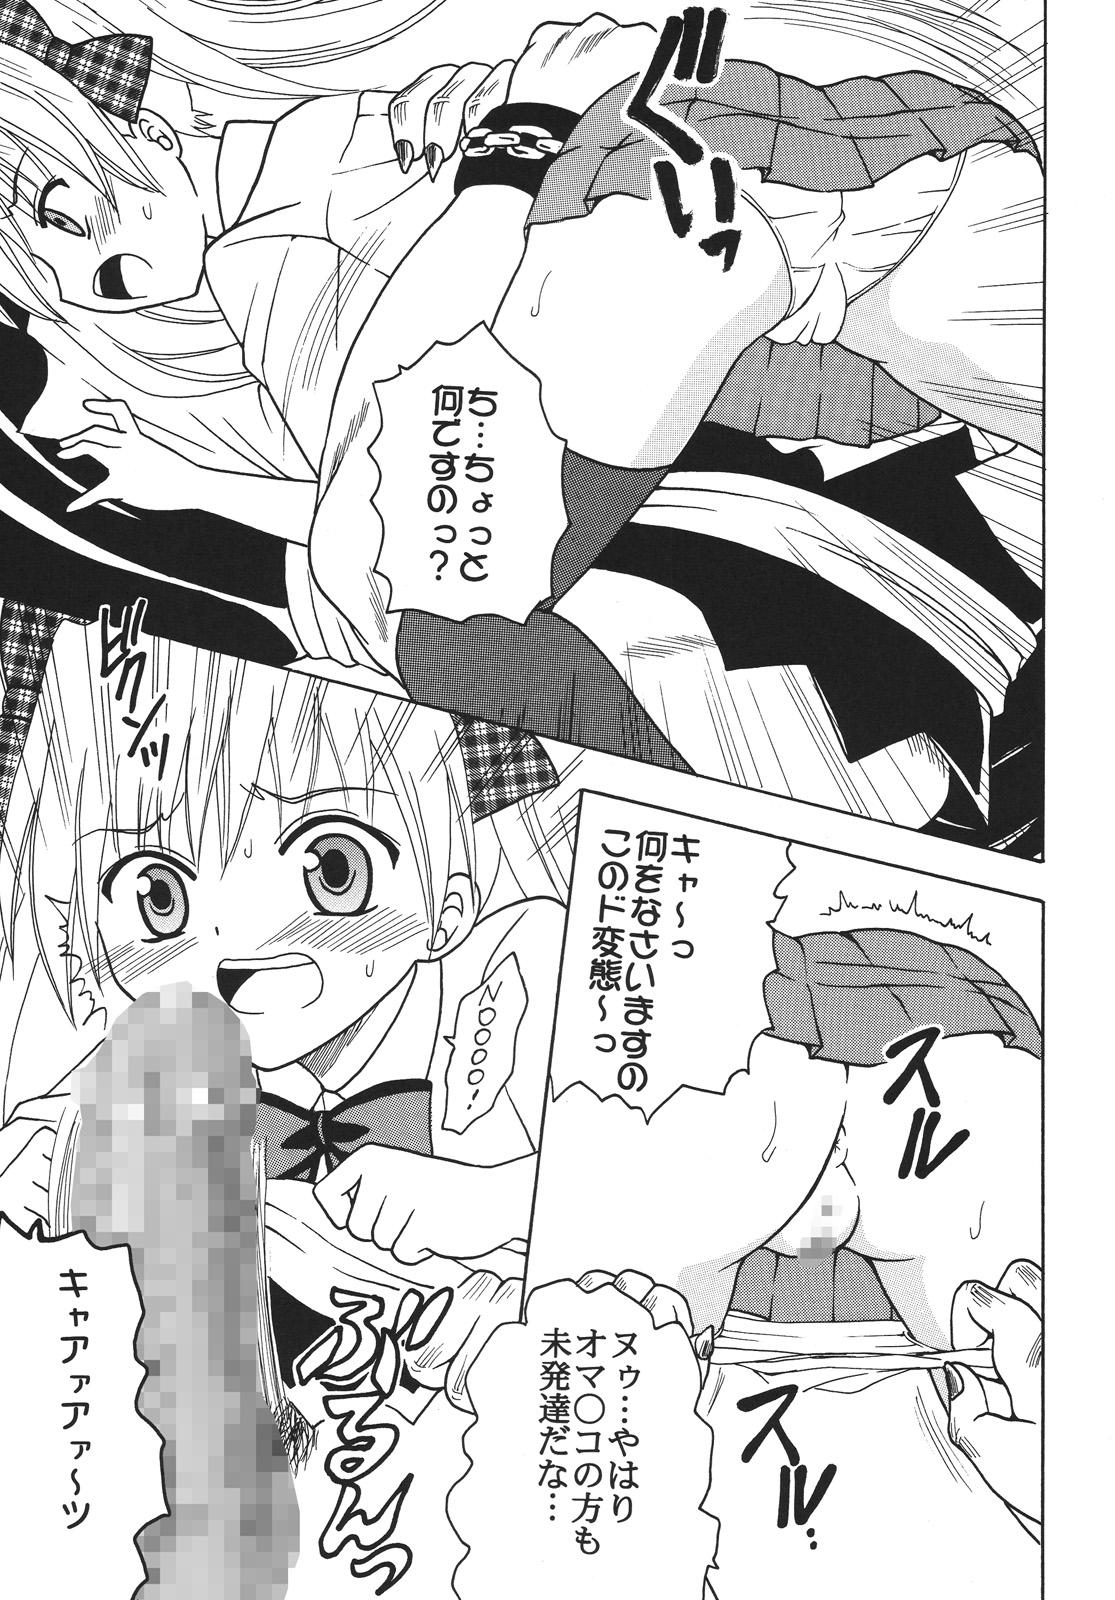 Bisexual Nakadashi Maid no Hinkaku 3 - Kamen no maid guy Blowing - Page 6